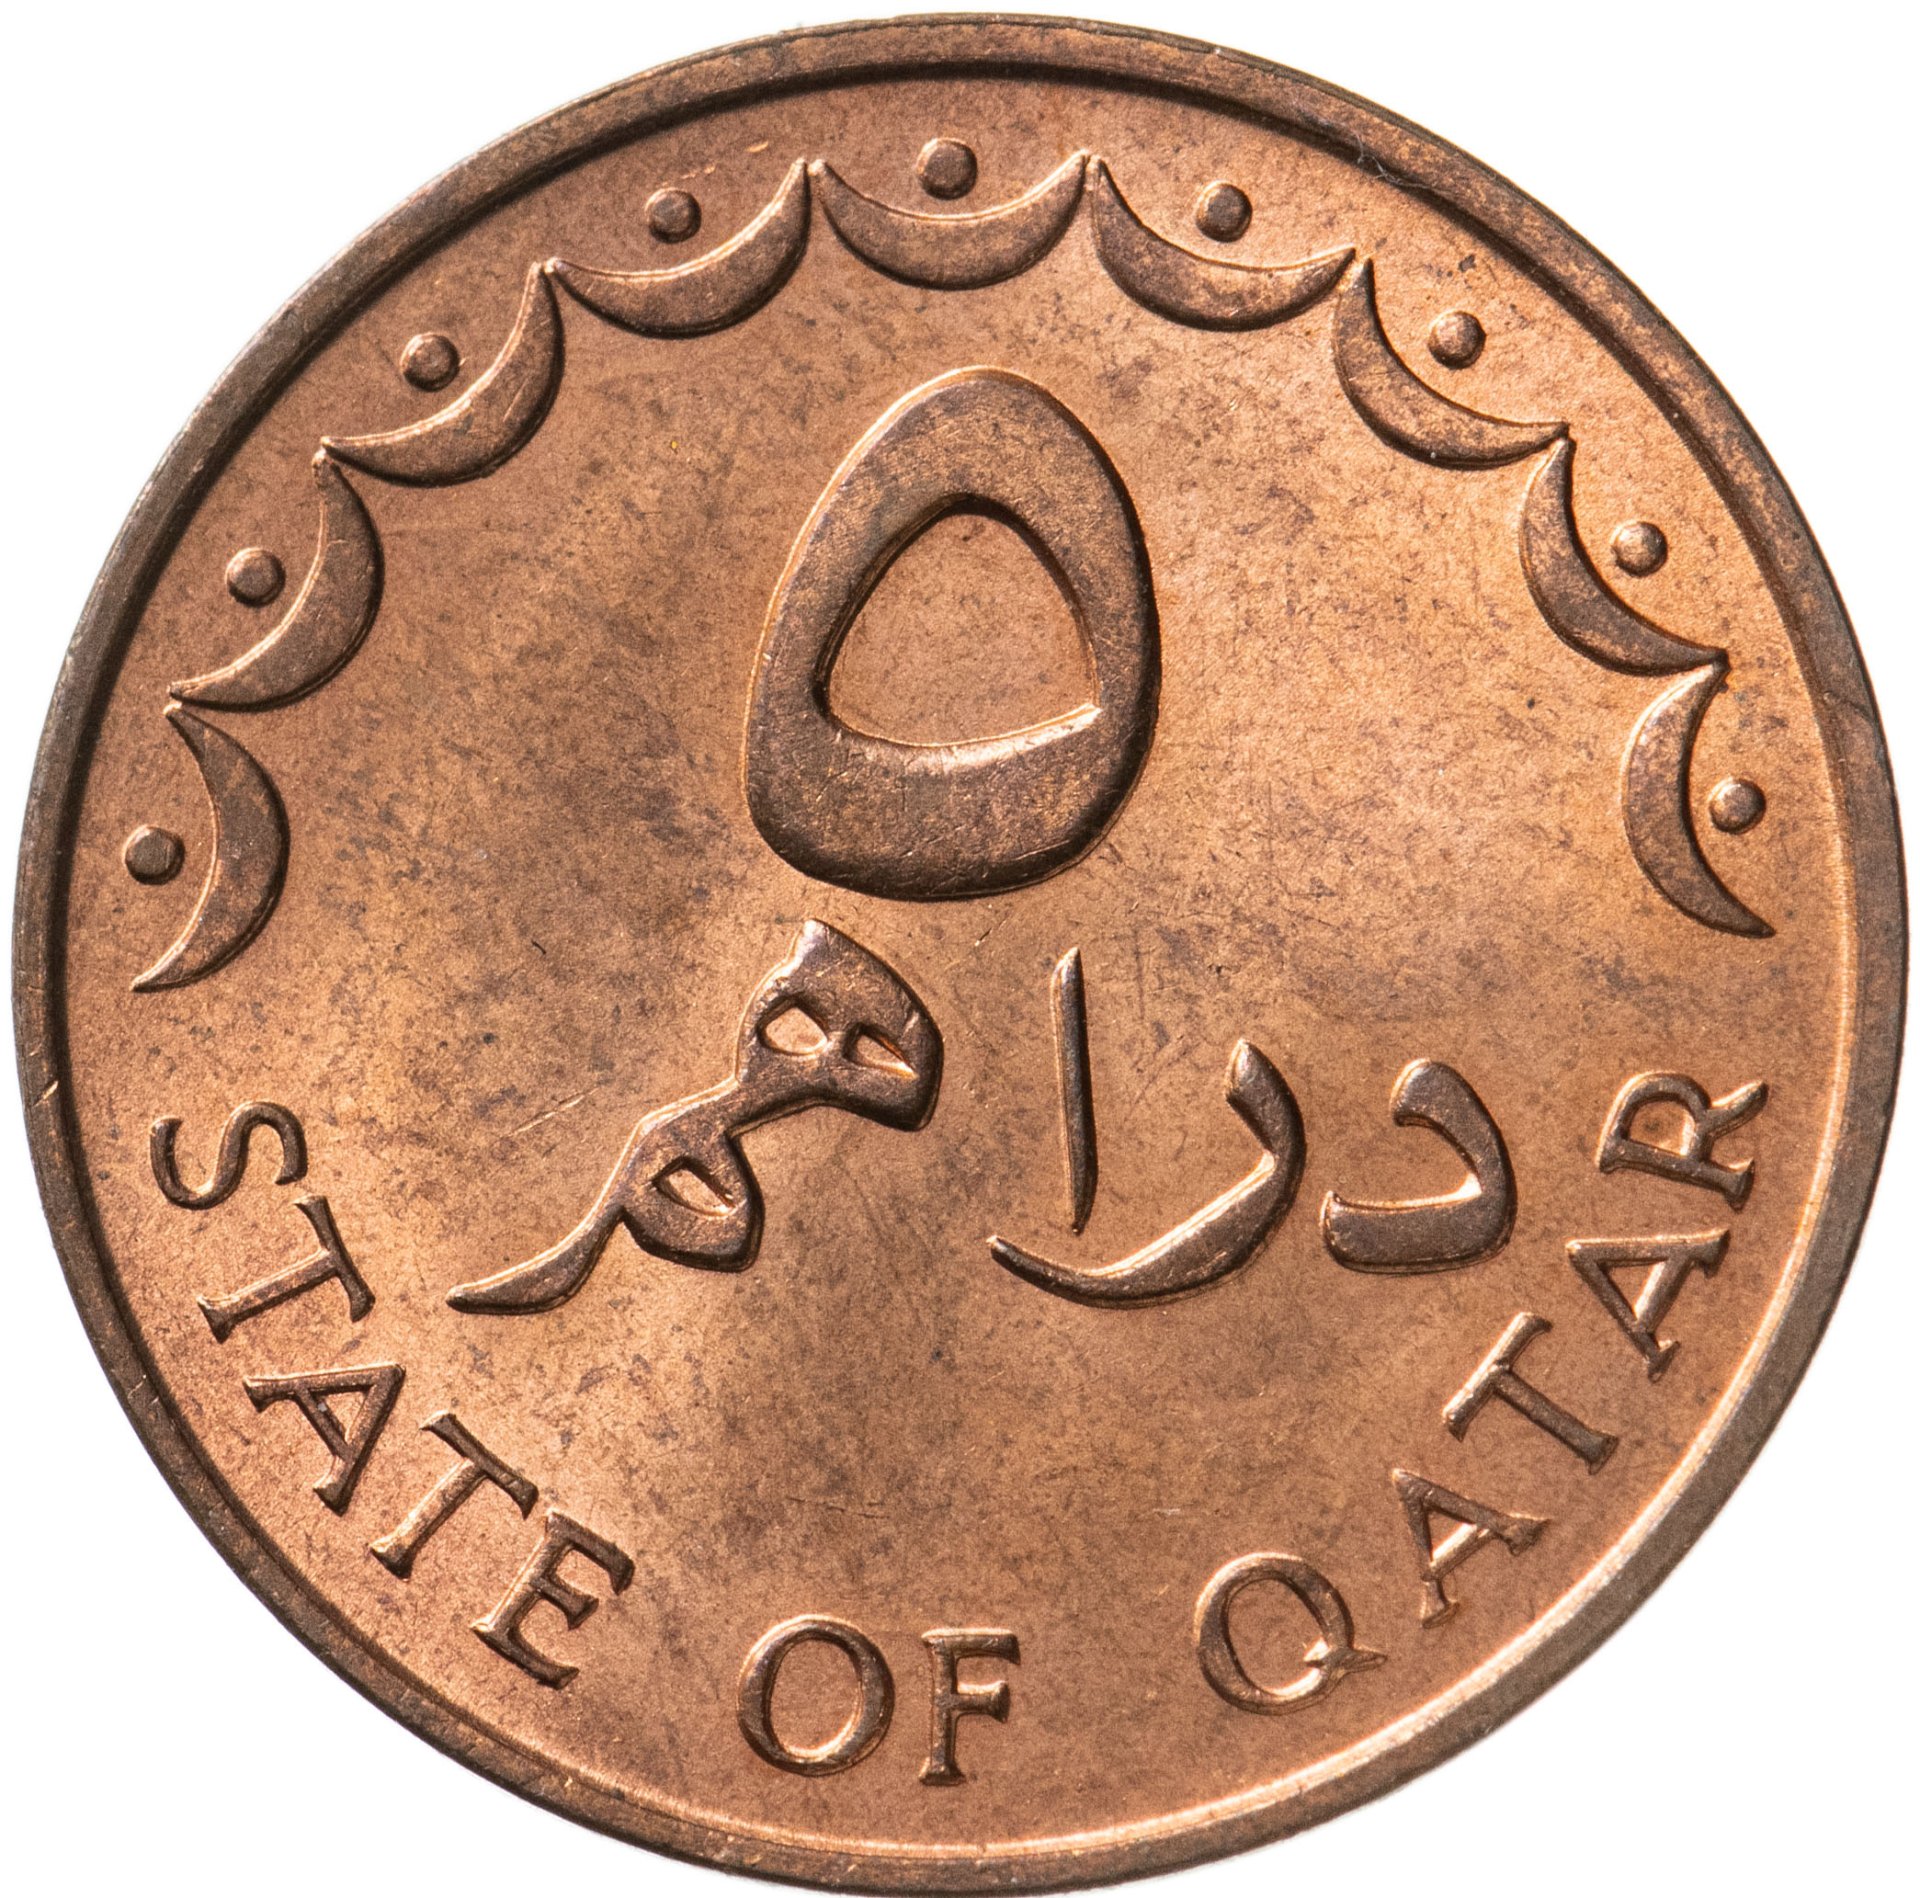 140 дирхам. Монеты Катара. Монеты Катара каталог. Миллион марокканских дирхам.